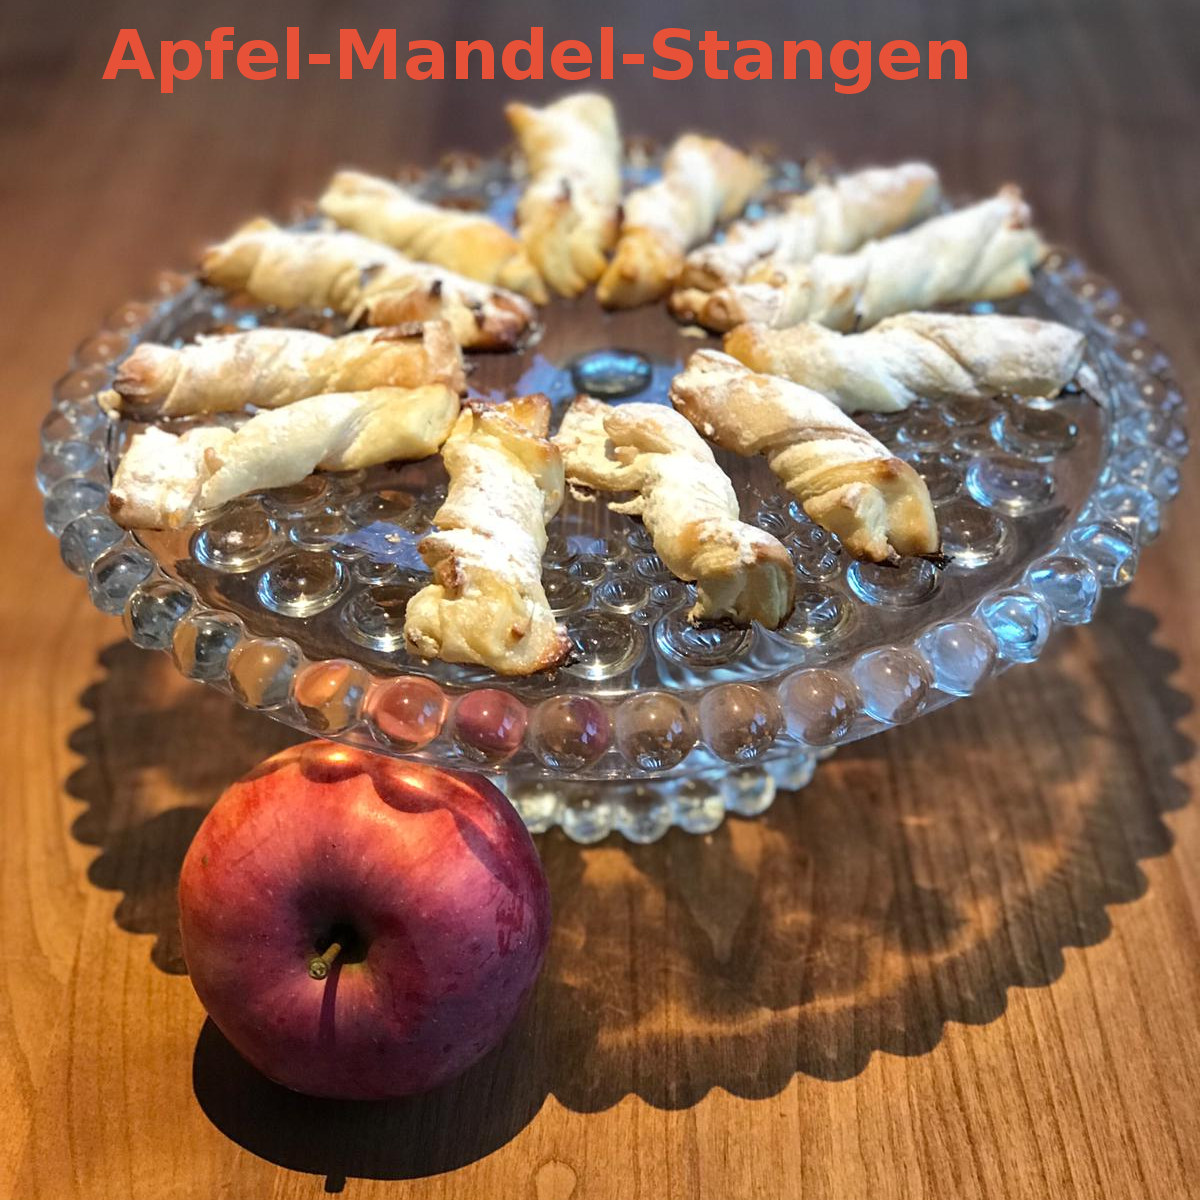 Apfel-Mandel-Stangen